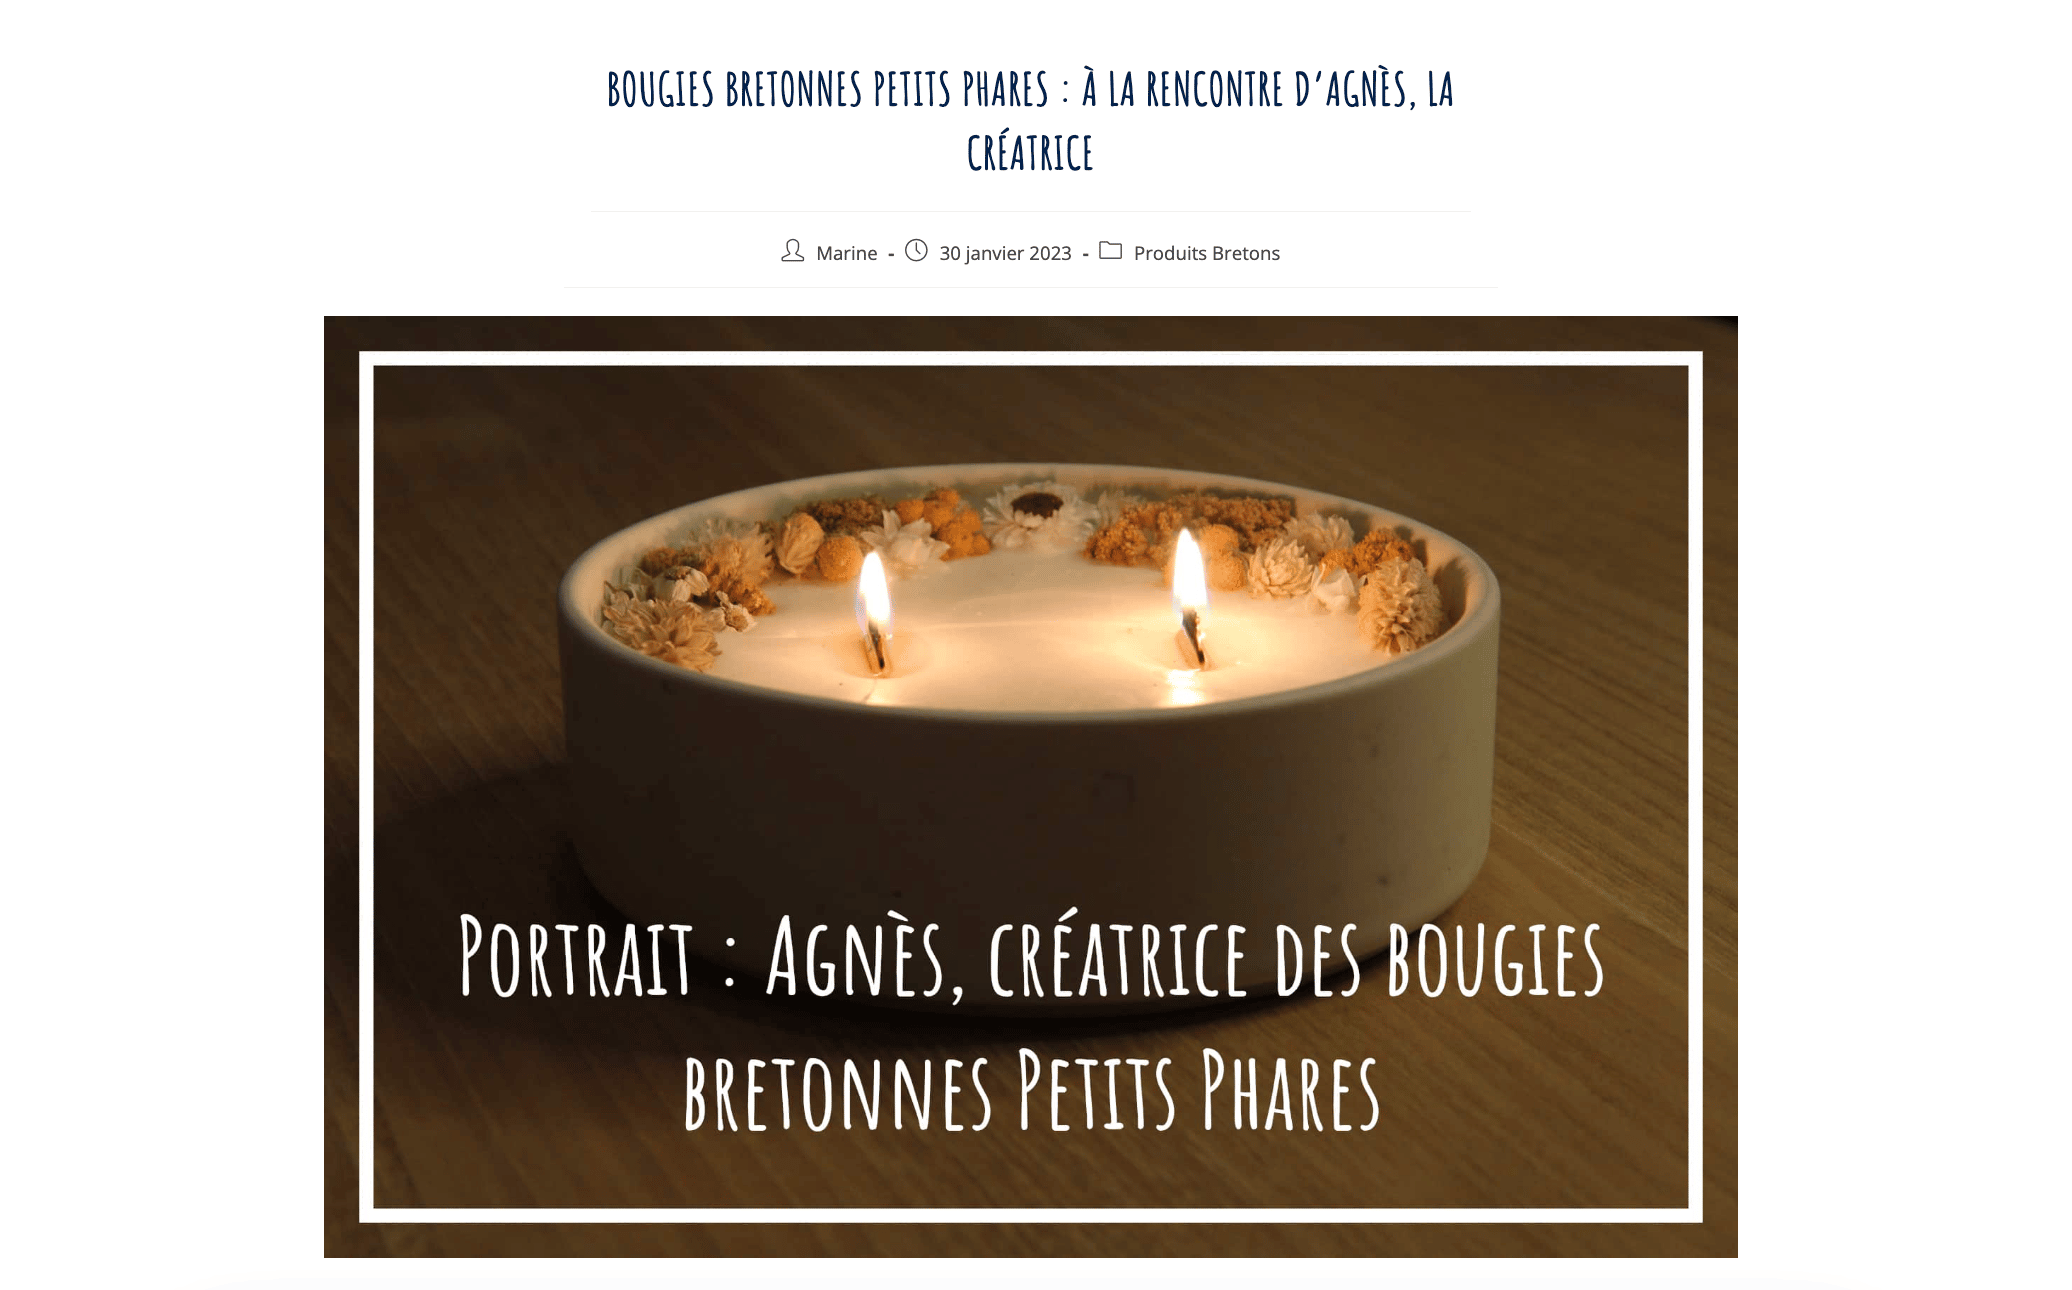 Un article de blog sur des bougies bretonnes